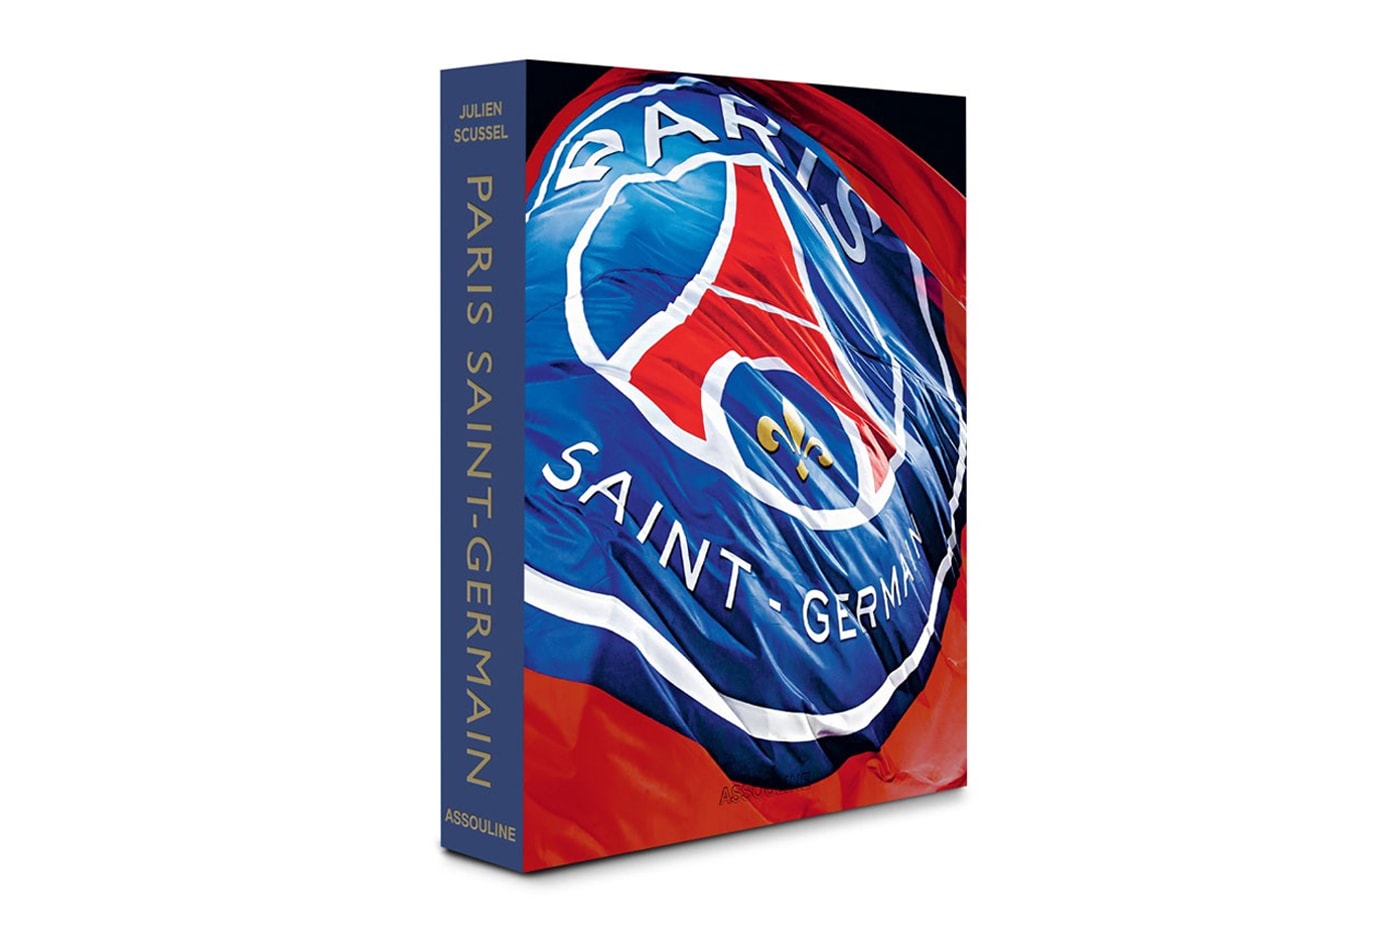 Assouline Releases Paris Saint-Germain Photo Book by Julien Scussel Sports